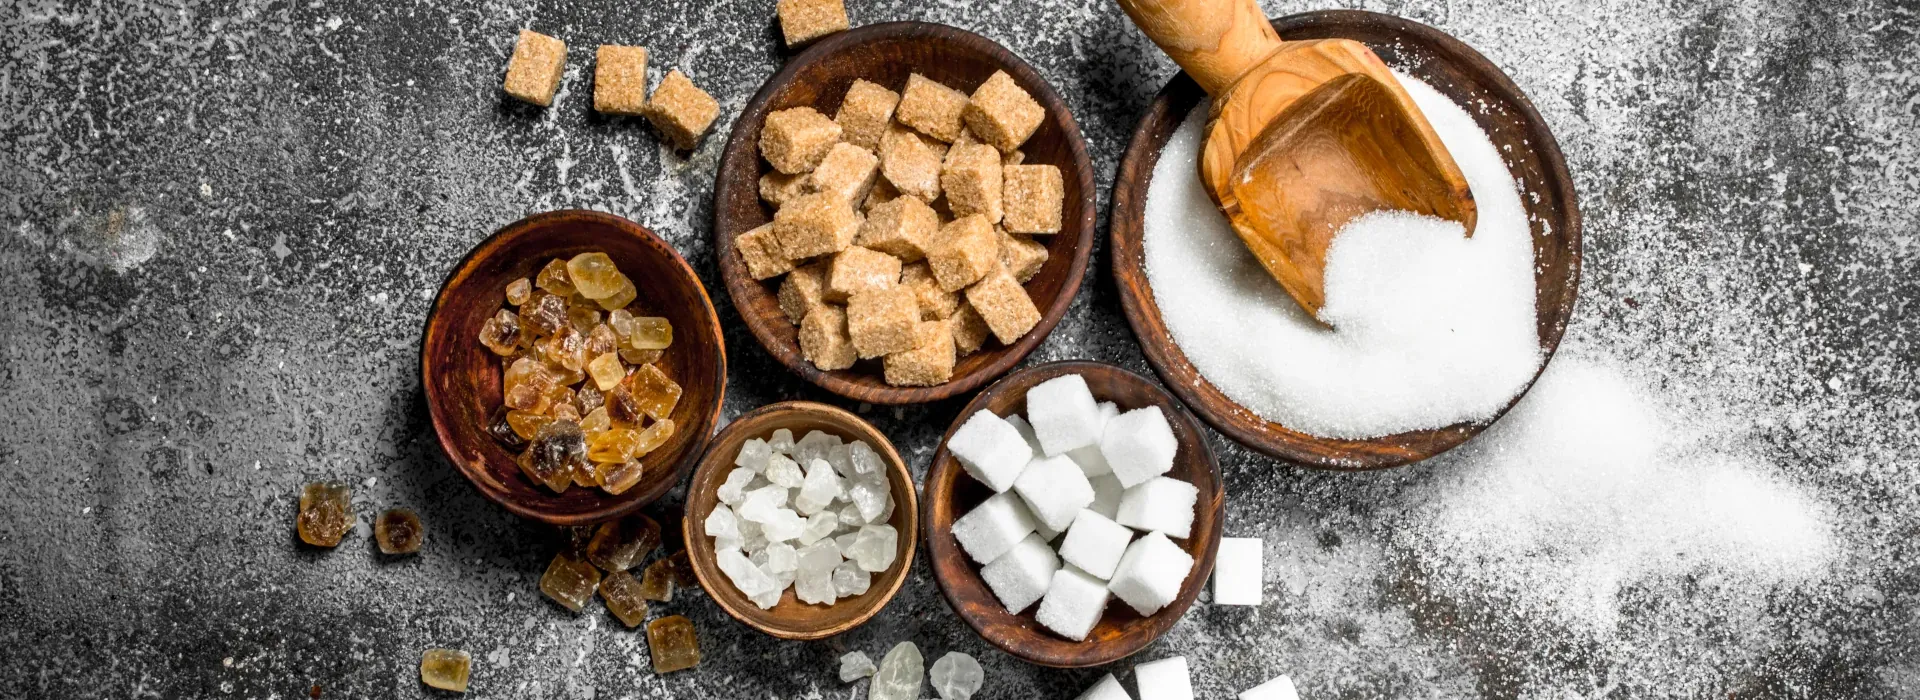 Zucker: Diverse Zuckersorten in Schalen